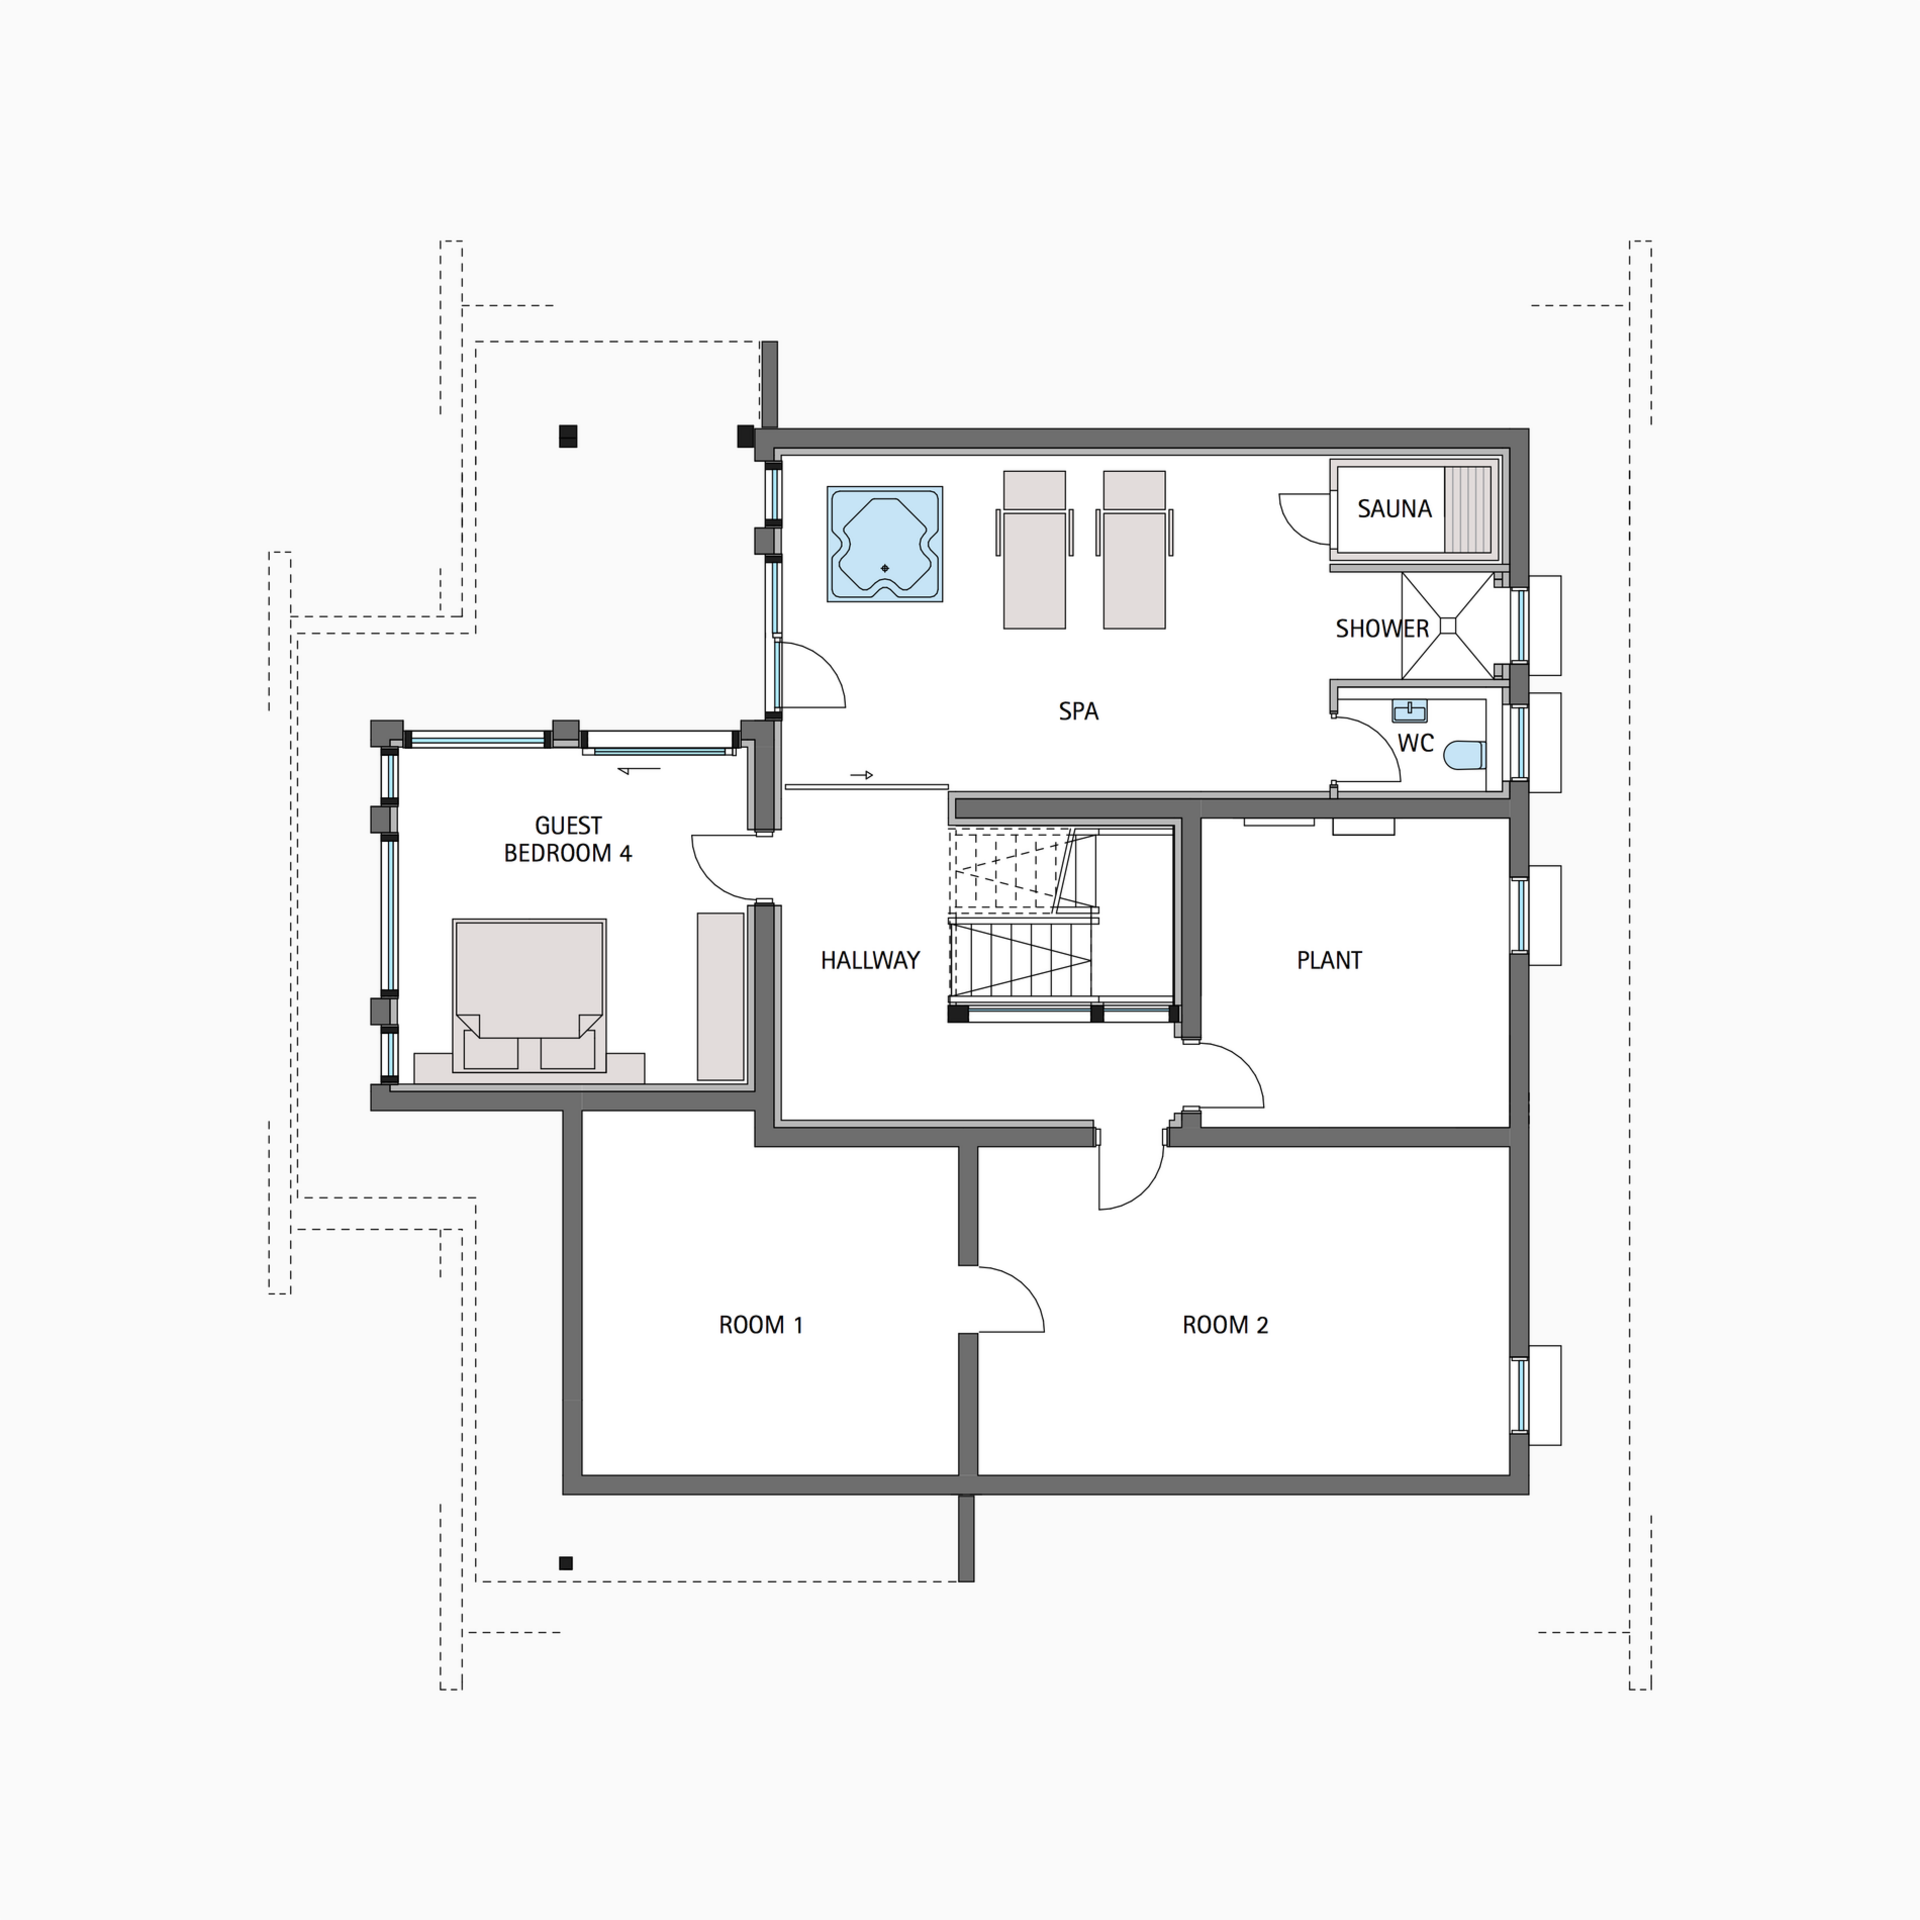 HUF house floor plan basement ART 5